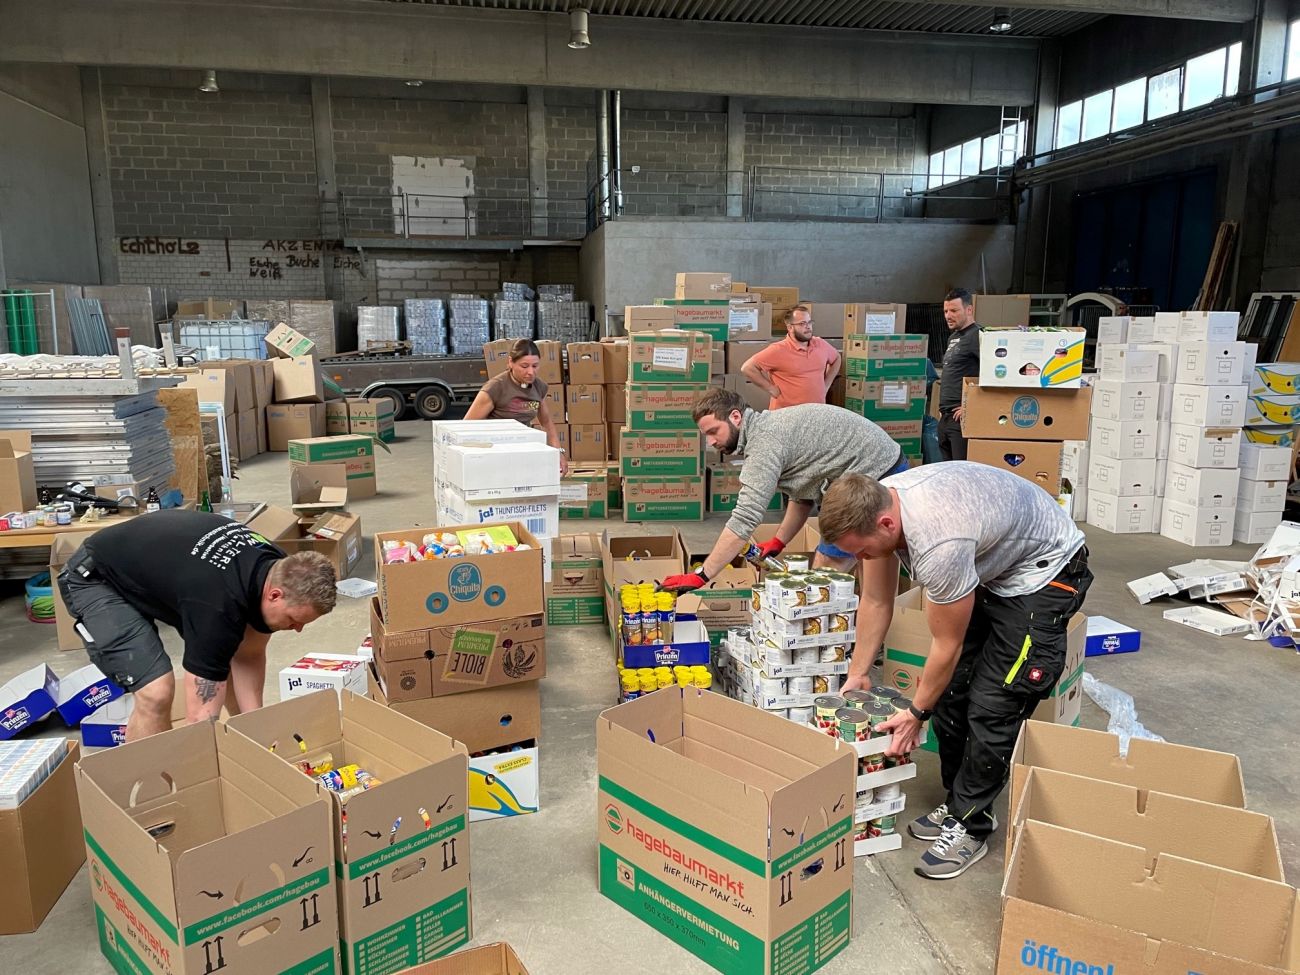 Beamte der Polizei: Hilfe im Wert von 364.000 € an Ukraine durch Hilfskonvoi Andernach Spendengelder und Hilfsgüter mit 4 Transporten ins Kriegsgebiet